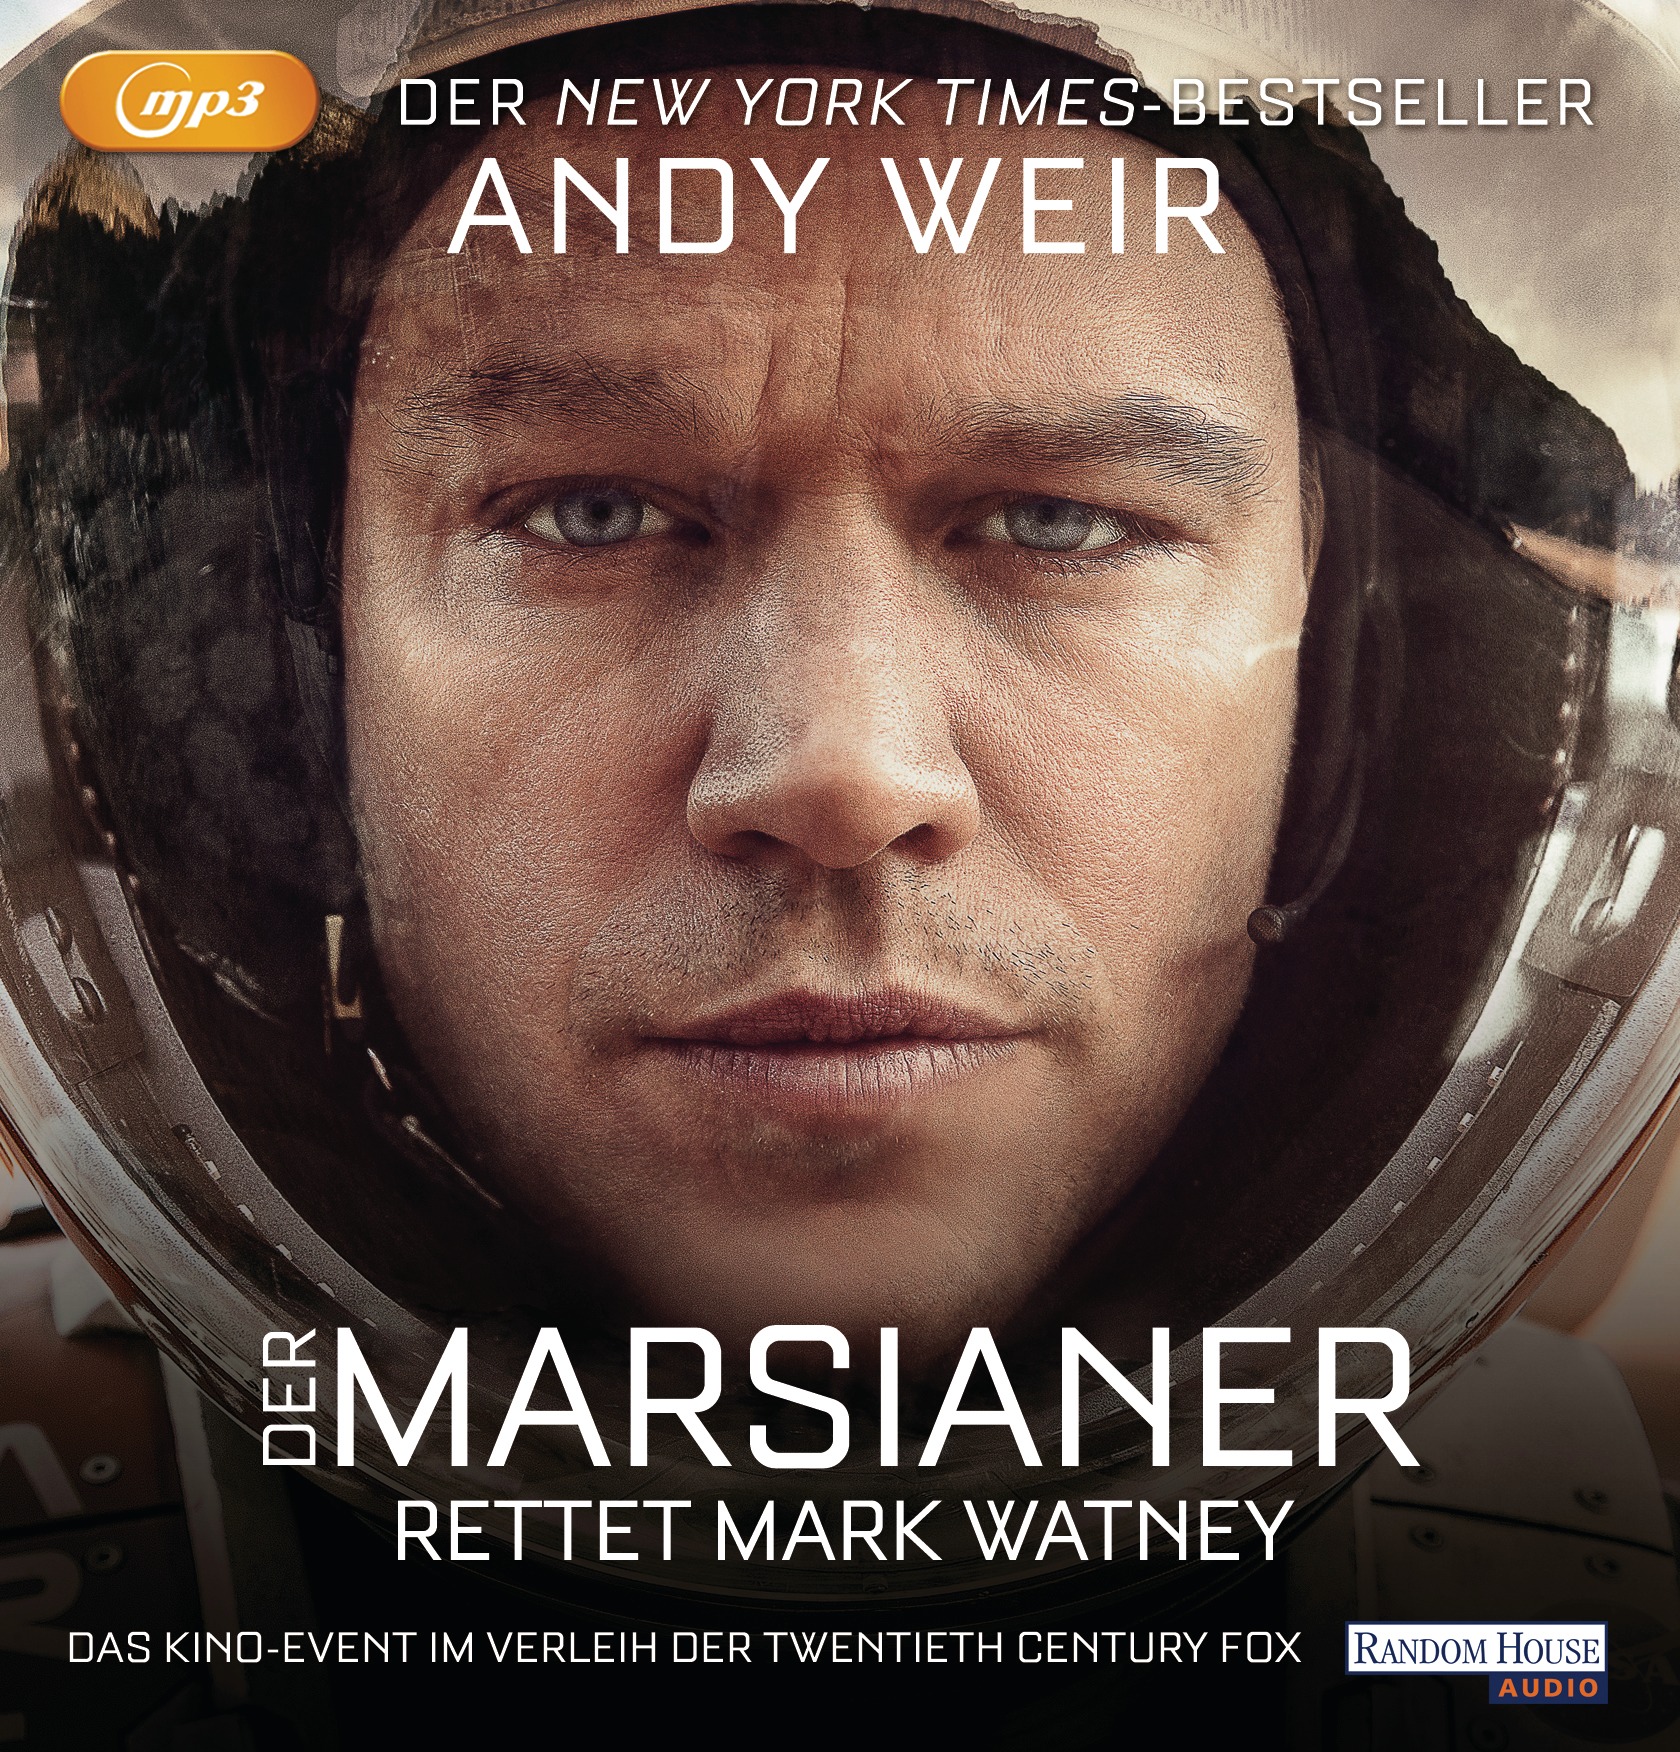 Hörbuch – Der Marsianer von Andy Weir